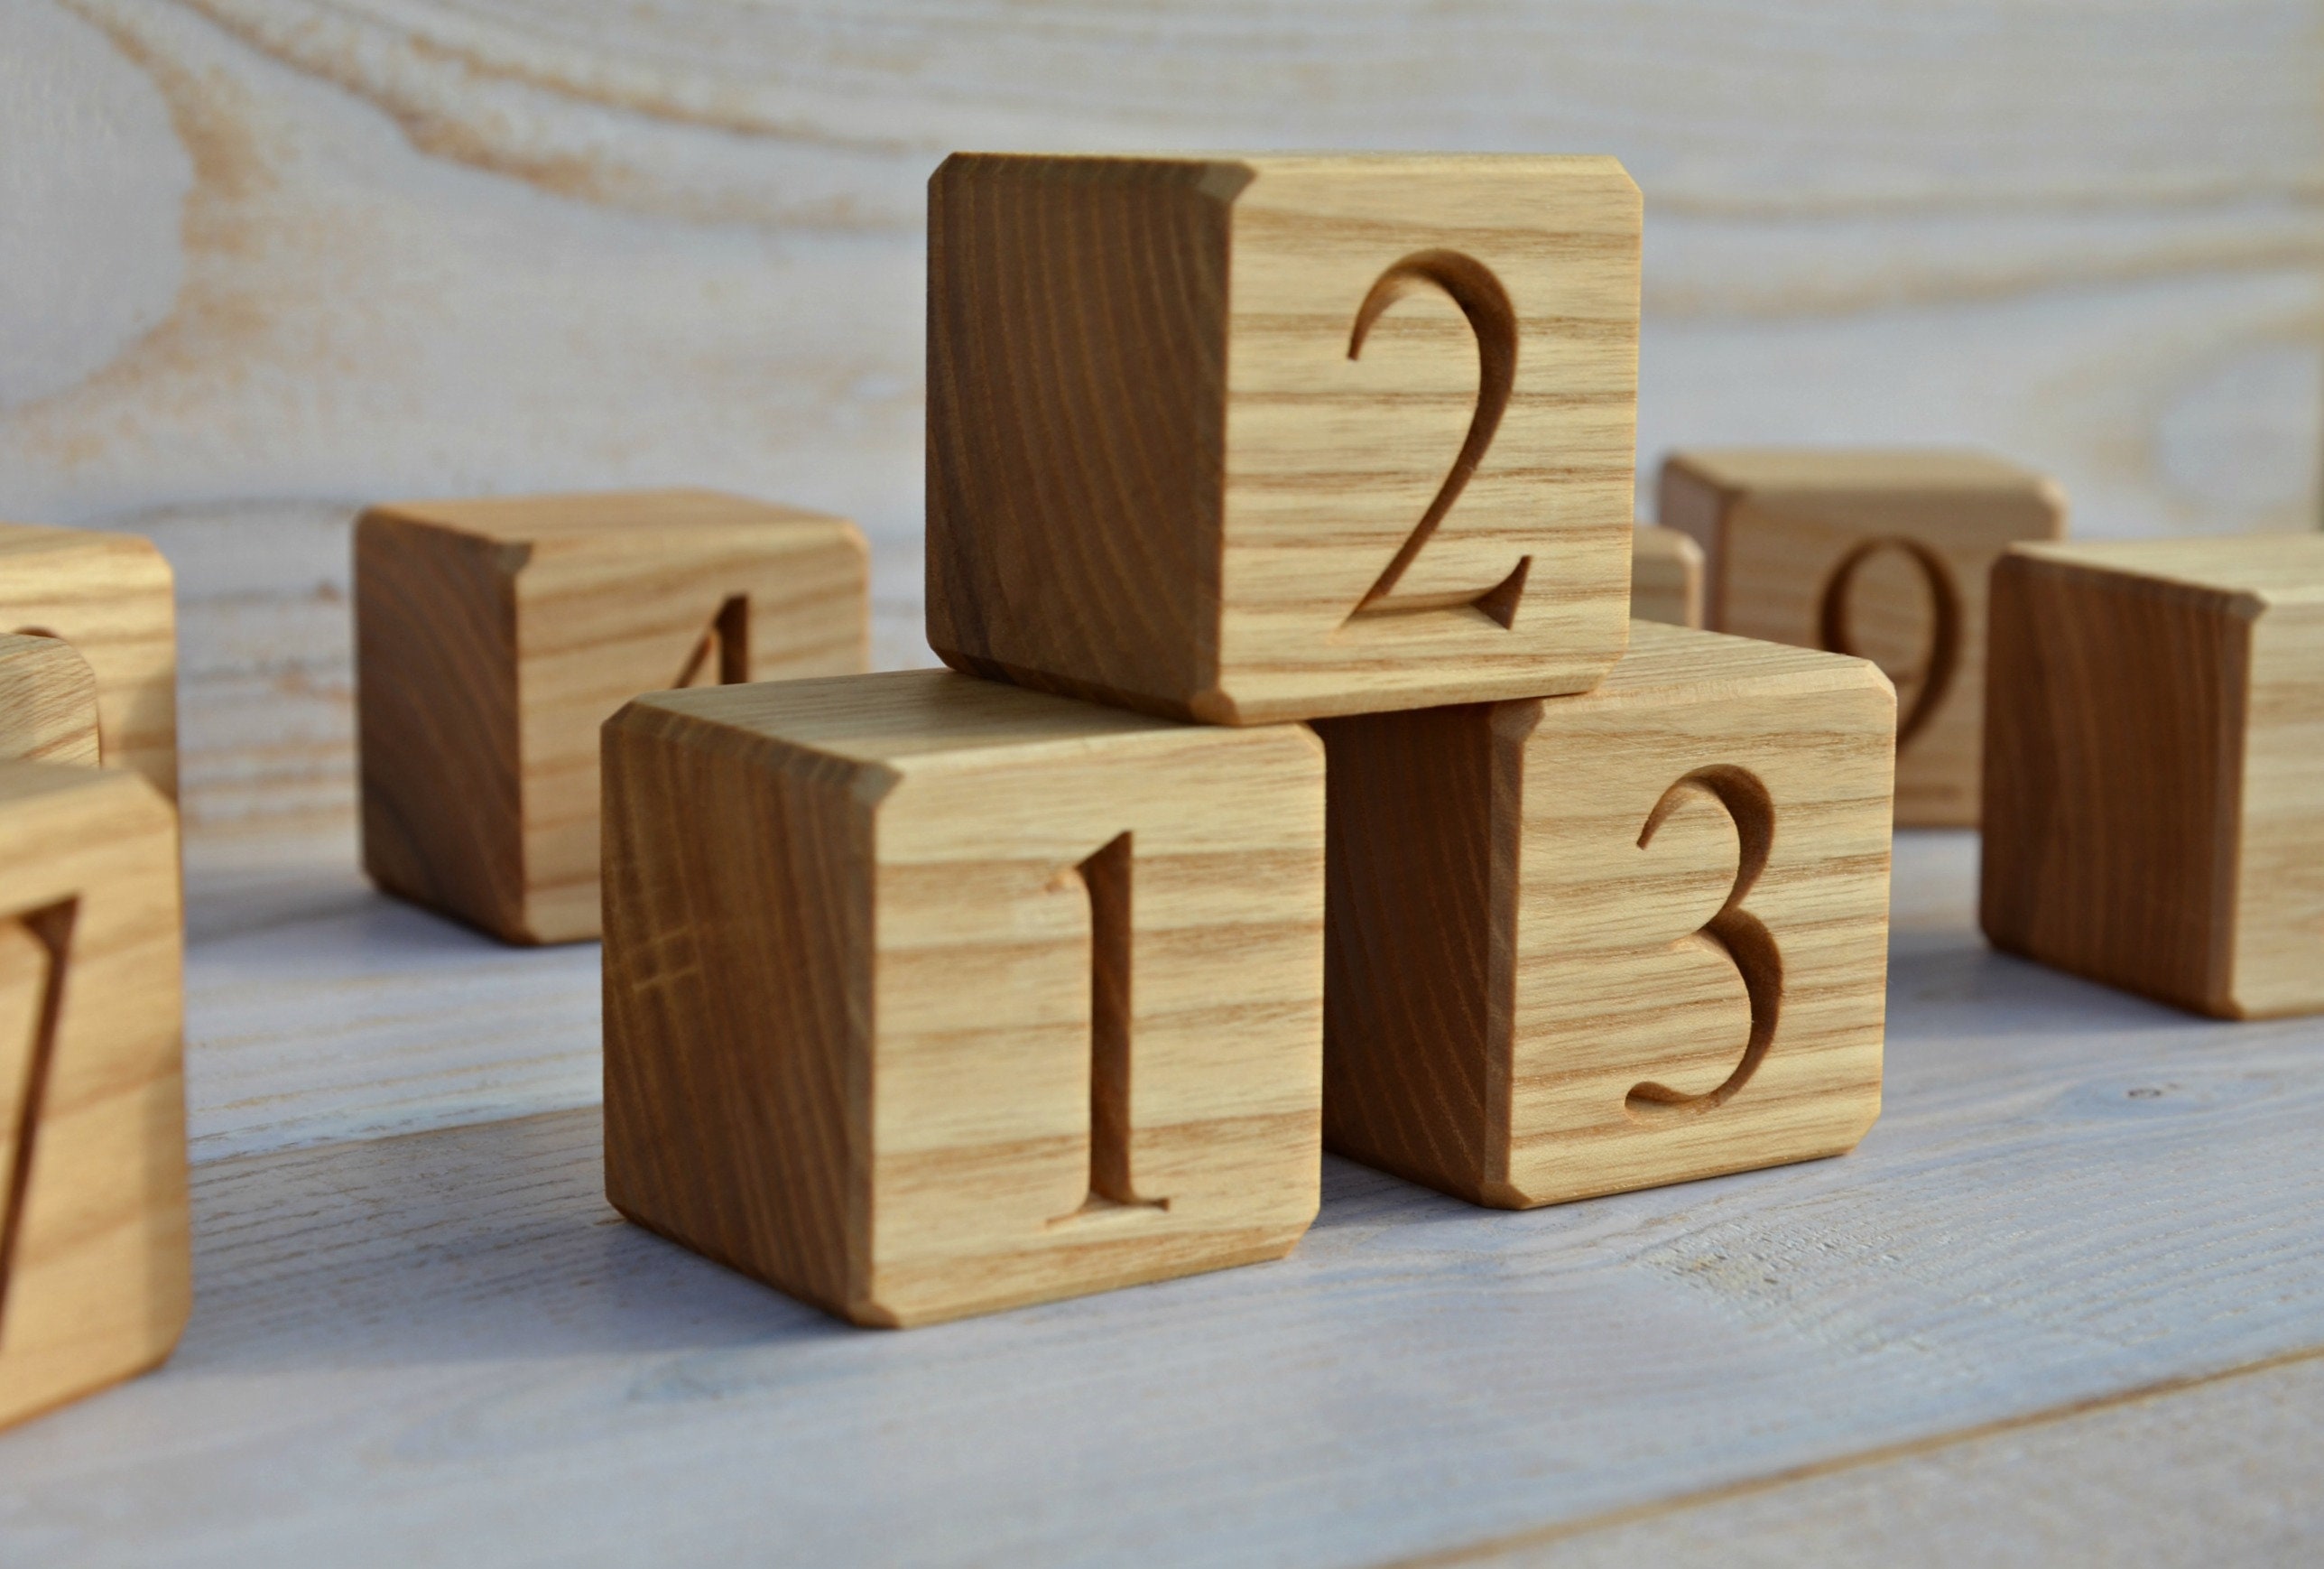 И т д деревянная. Деревянные кубики. Деревянные кубики для детей. Кубики цифры. Деревянные кубики с цифрами.